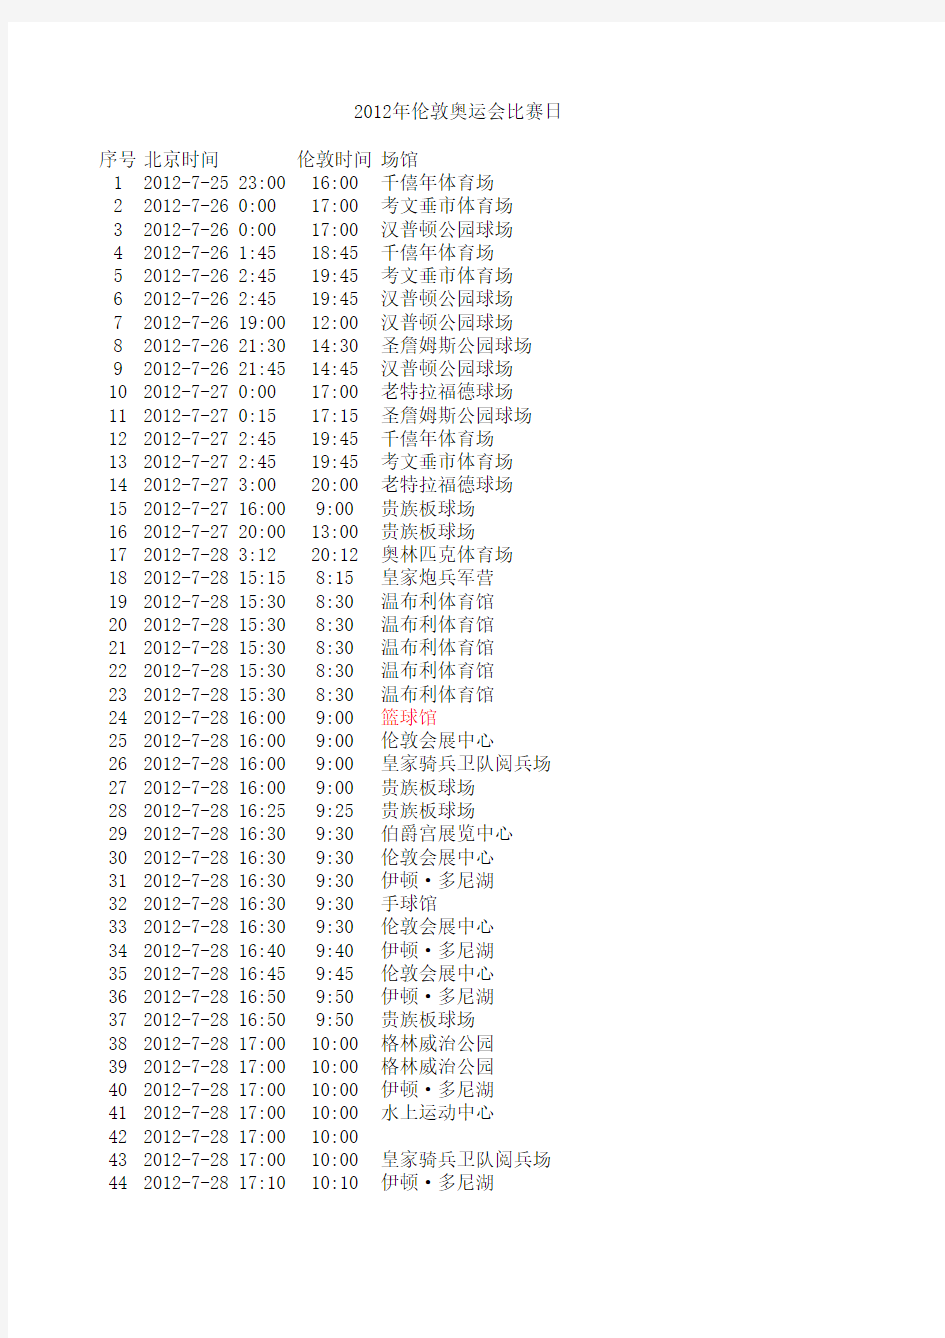 2012年伦敦奥运会比赛日程表完整版(北京时间)